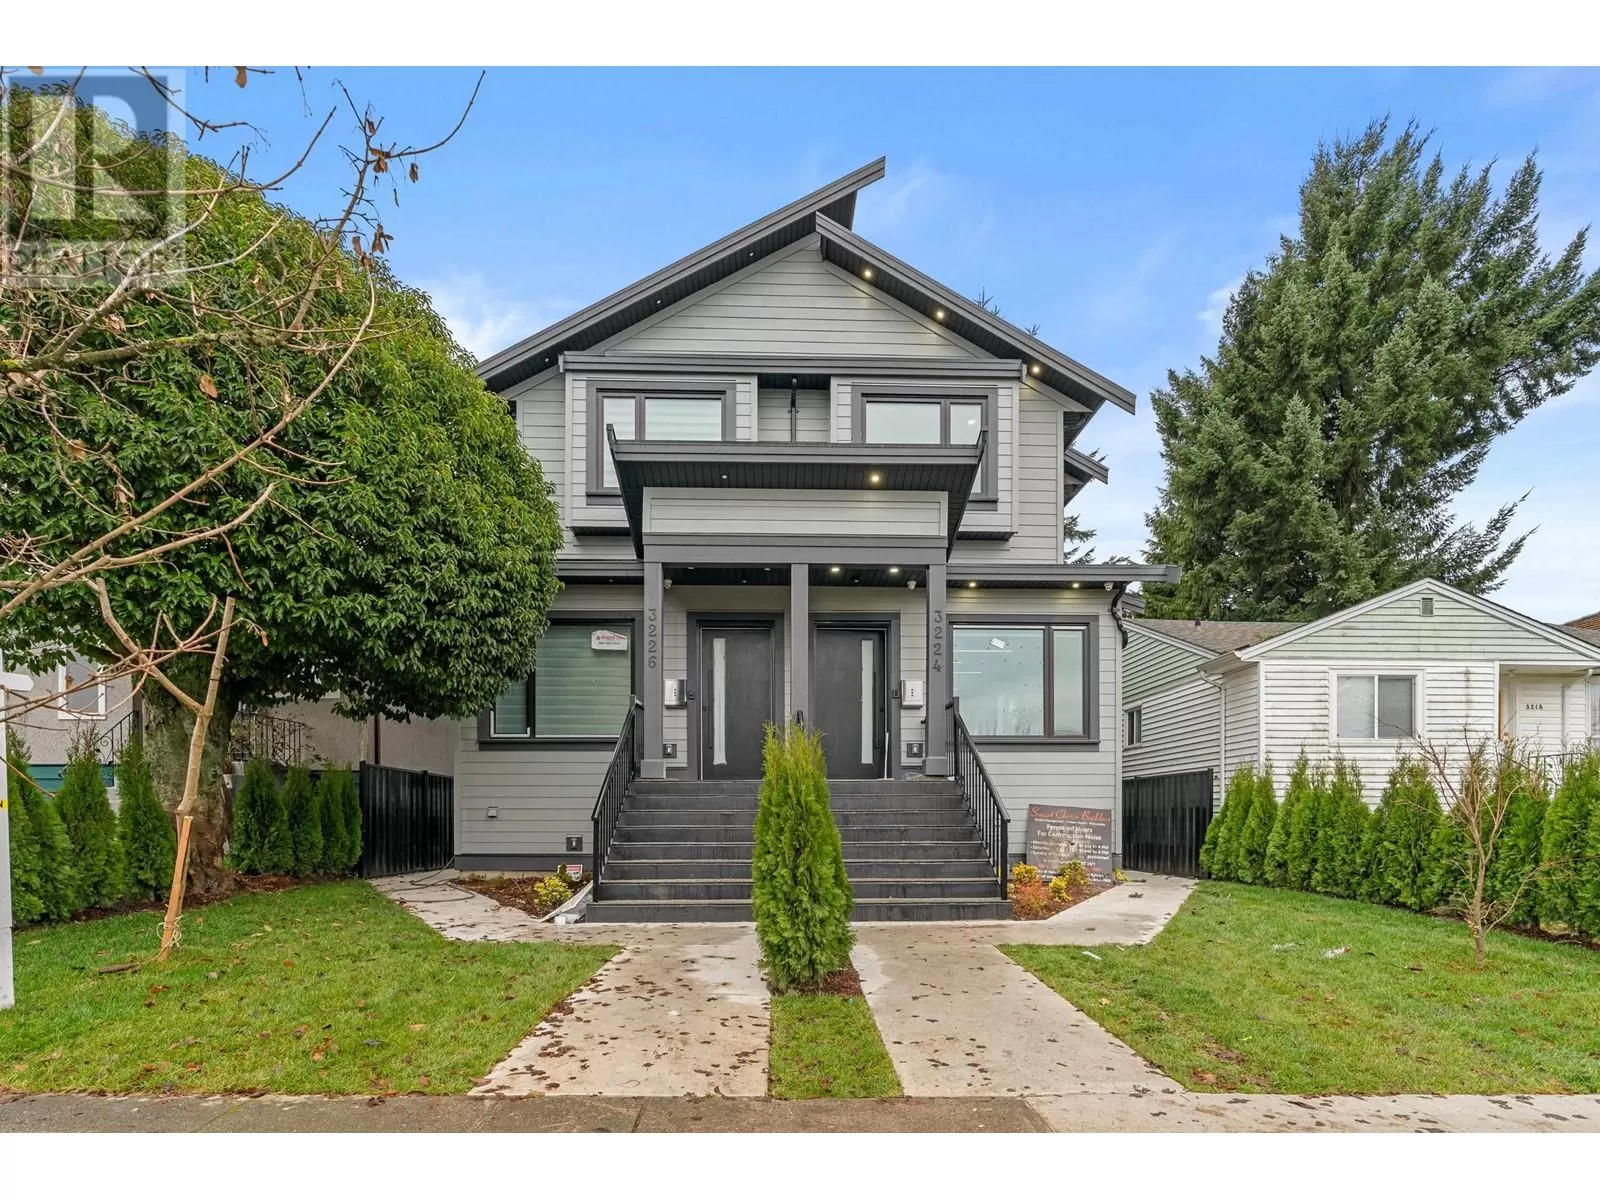 Duplex for rent: 3224 Marmion Avenue, Vancouver, British Columbia V5R 4W8